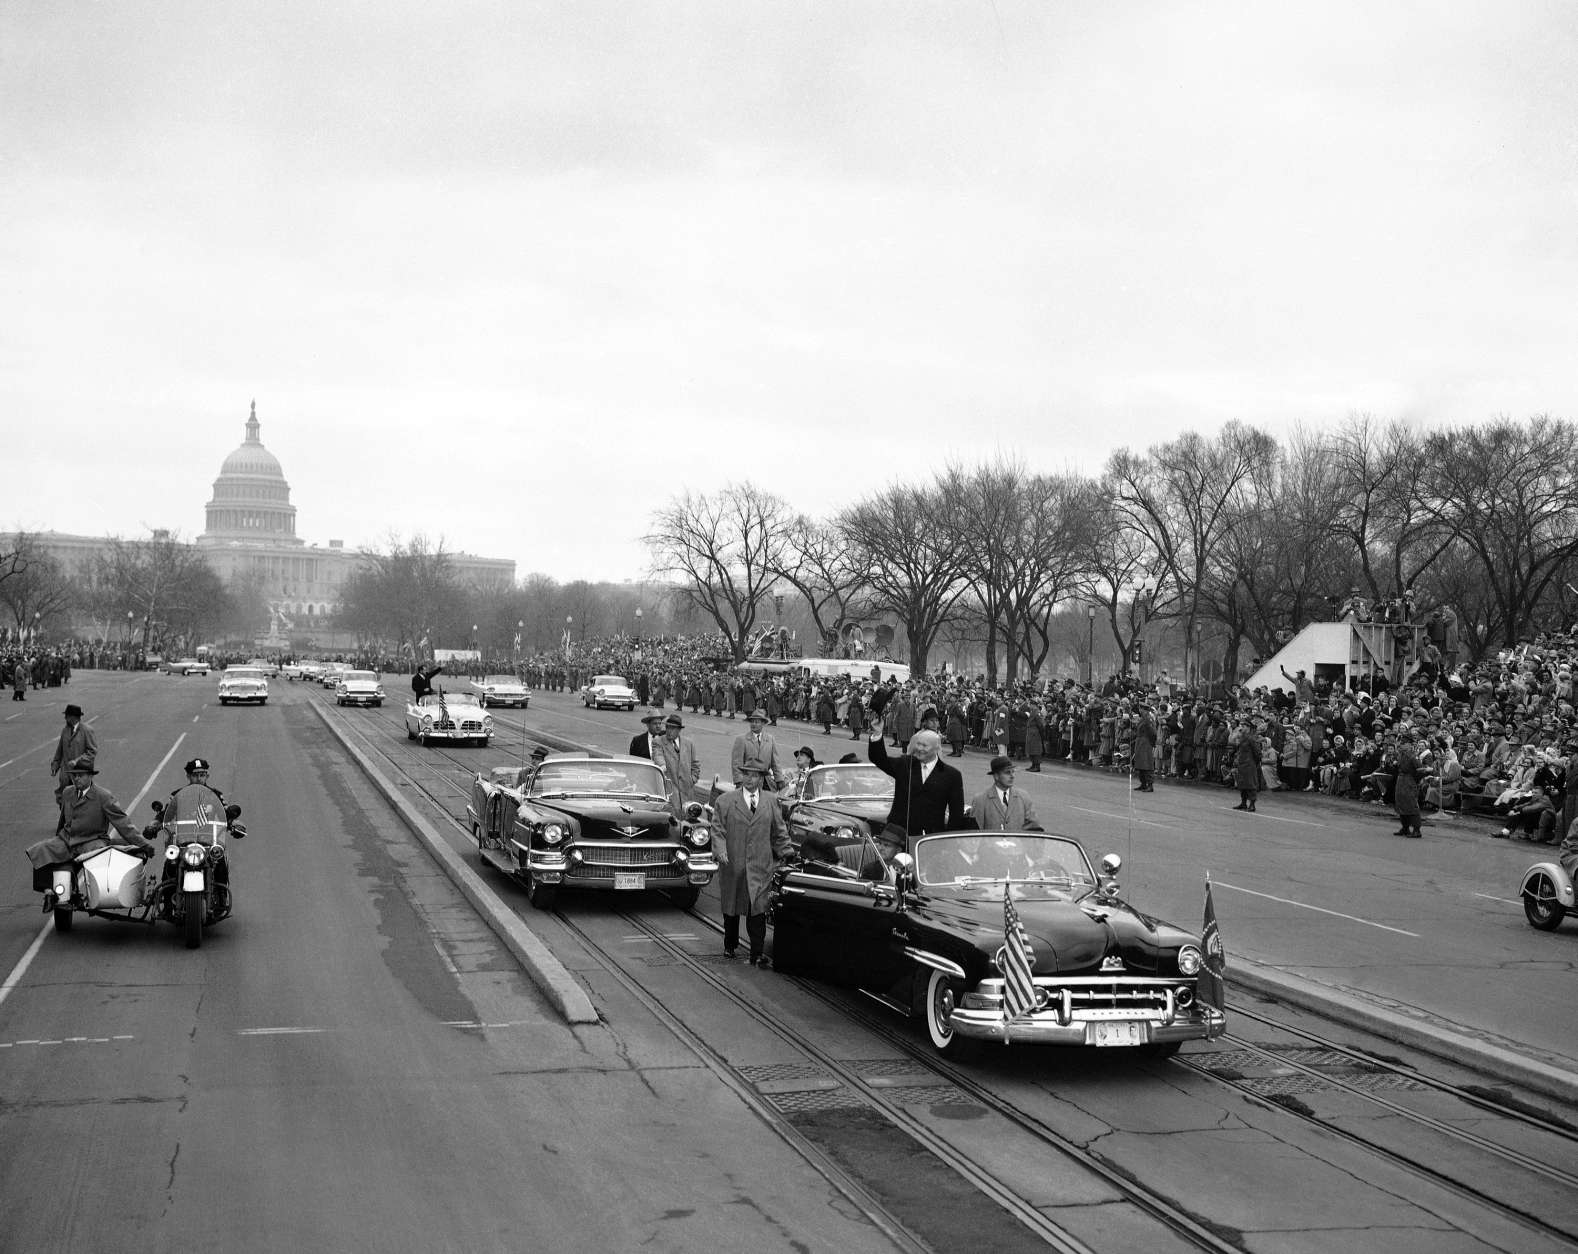 inauguration parade january 1961 thunderbird